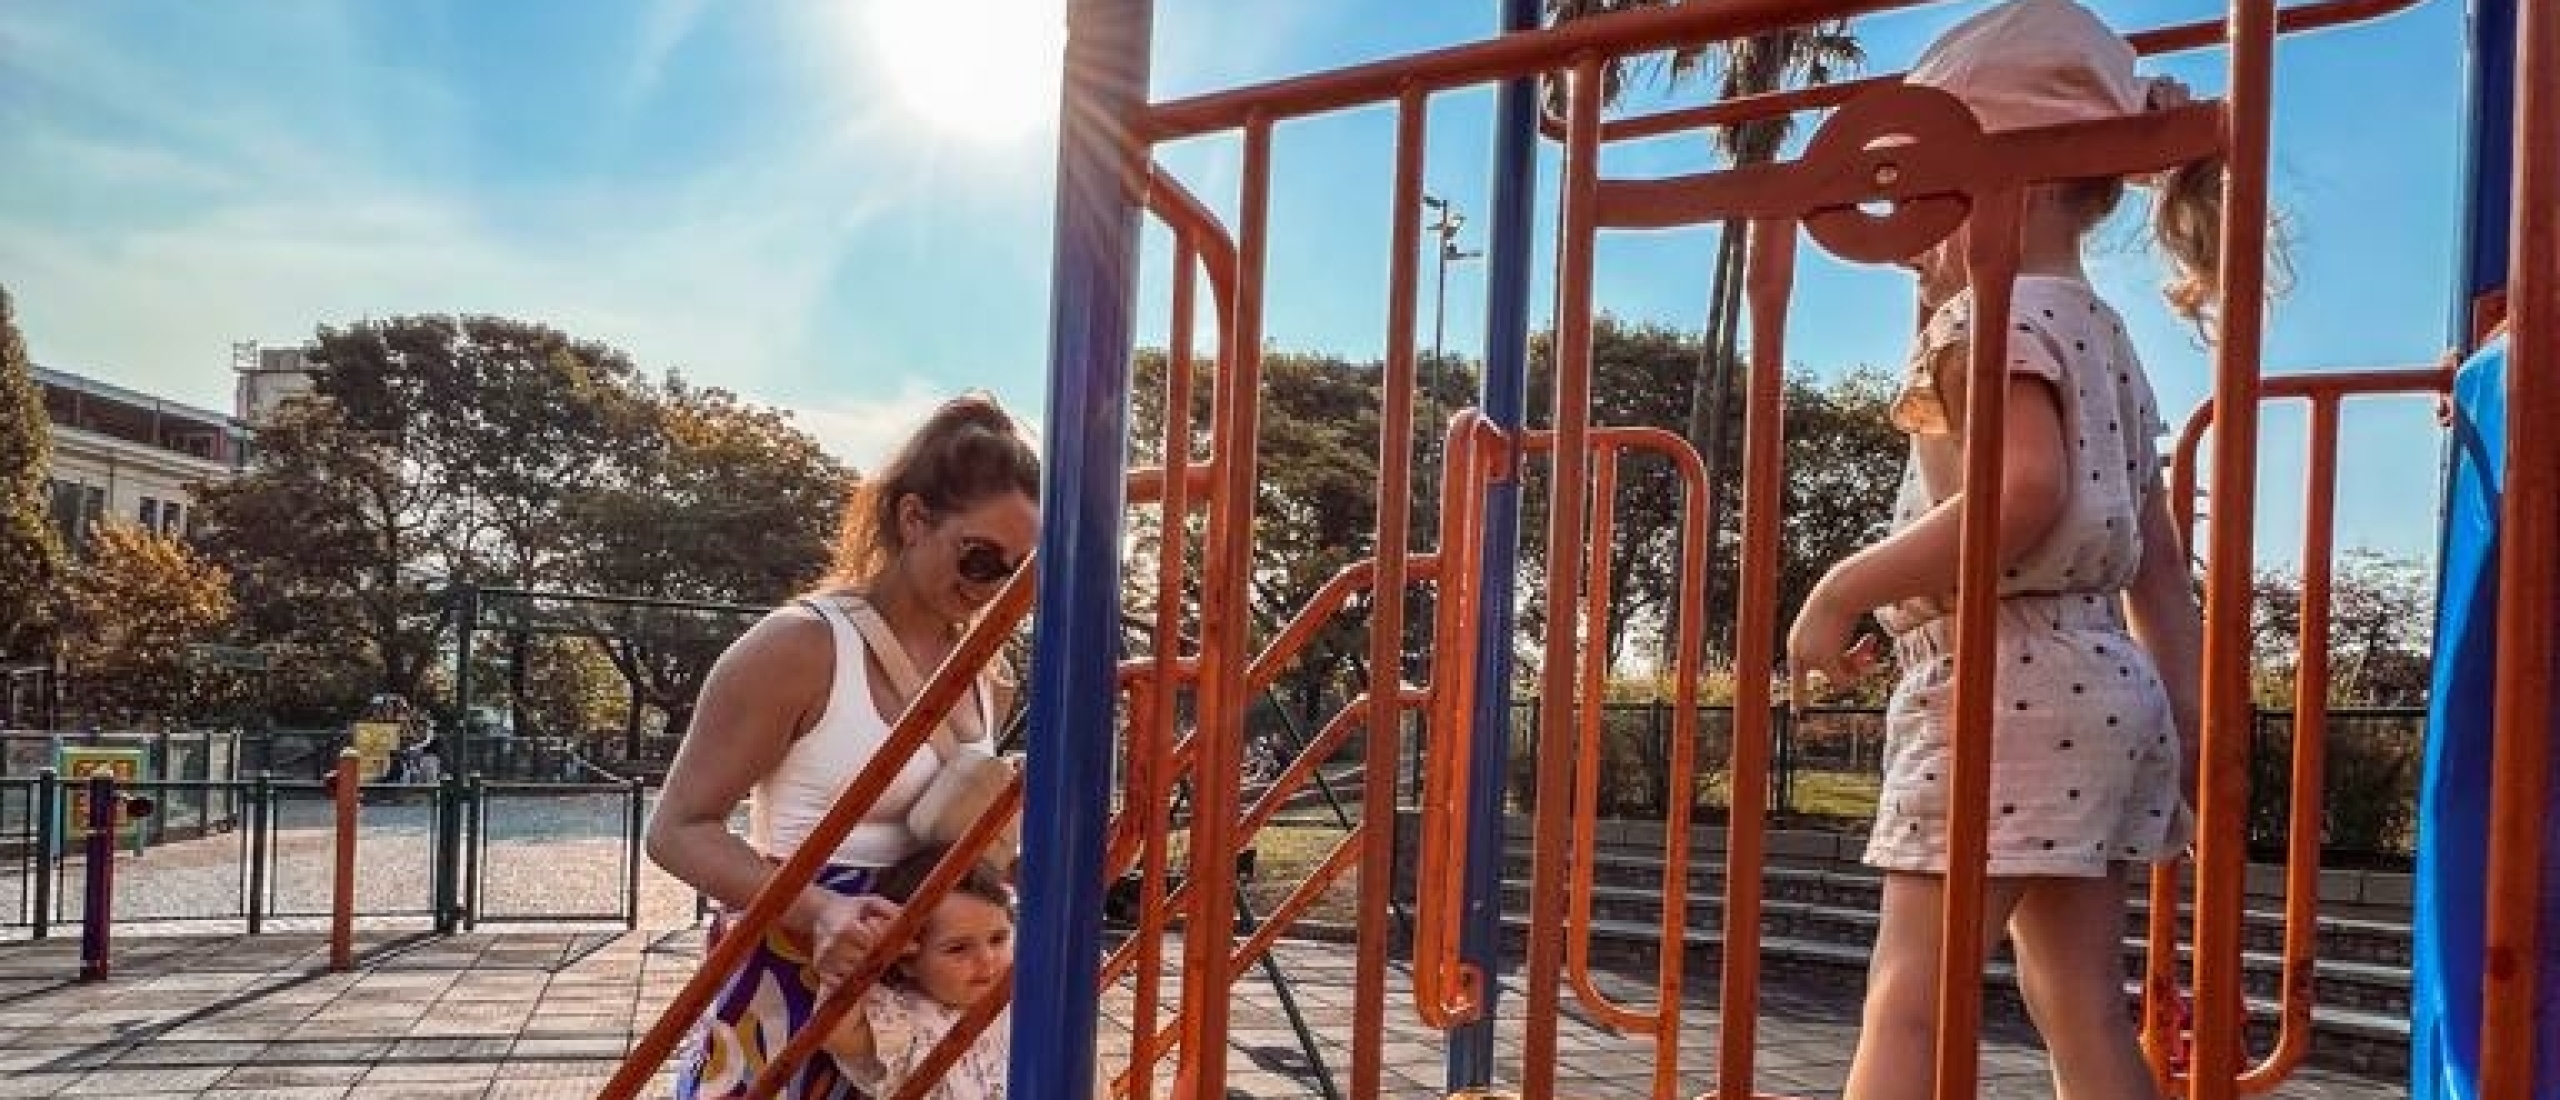 21 leukste activiteiten om in Buenos Aires met kinderen te doen